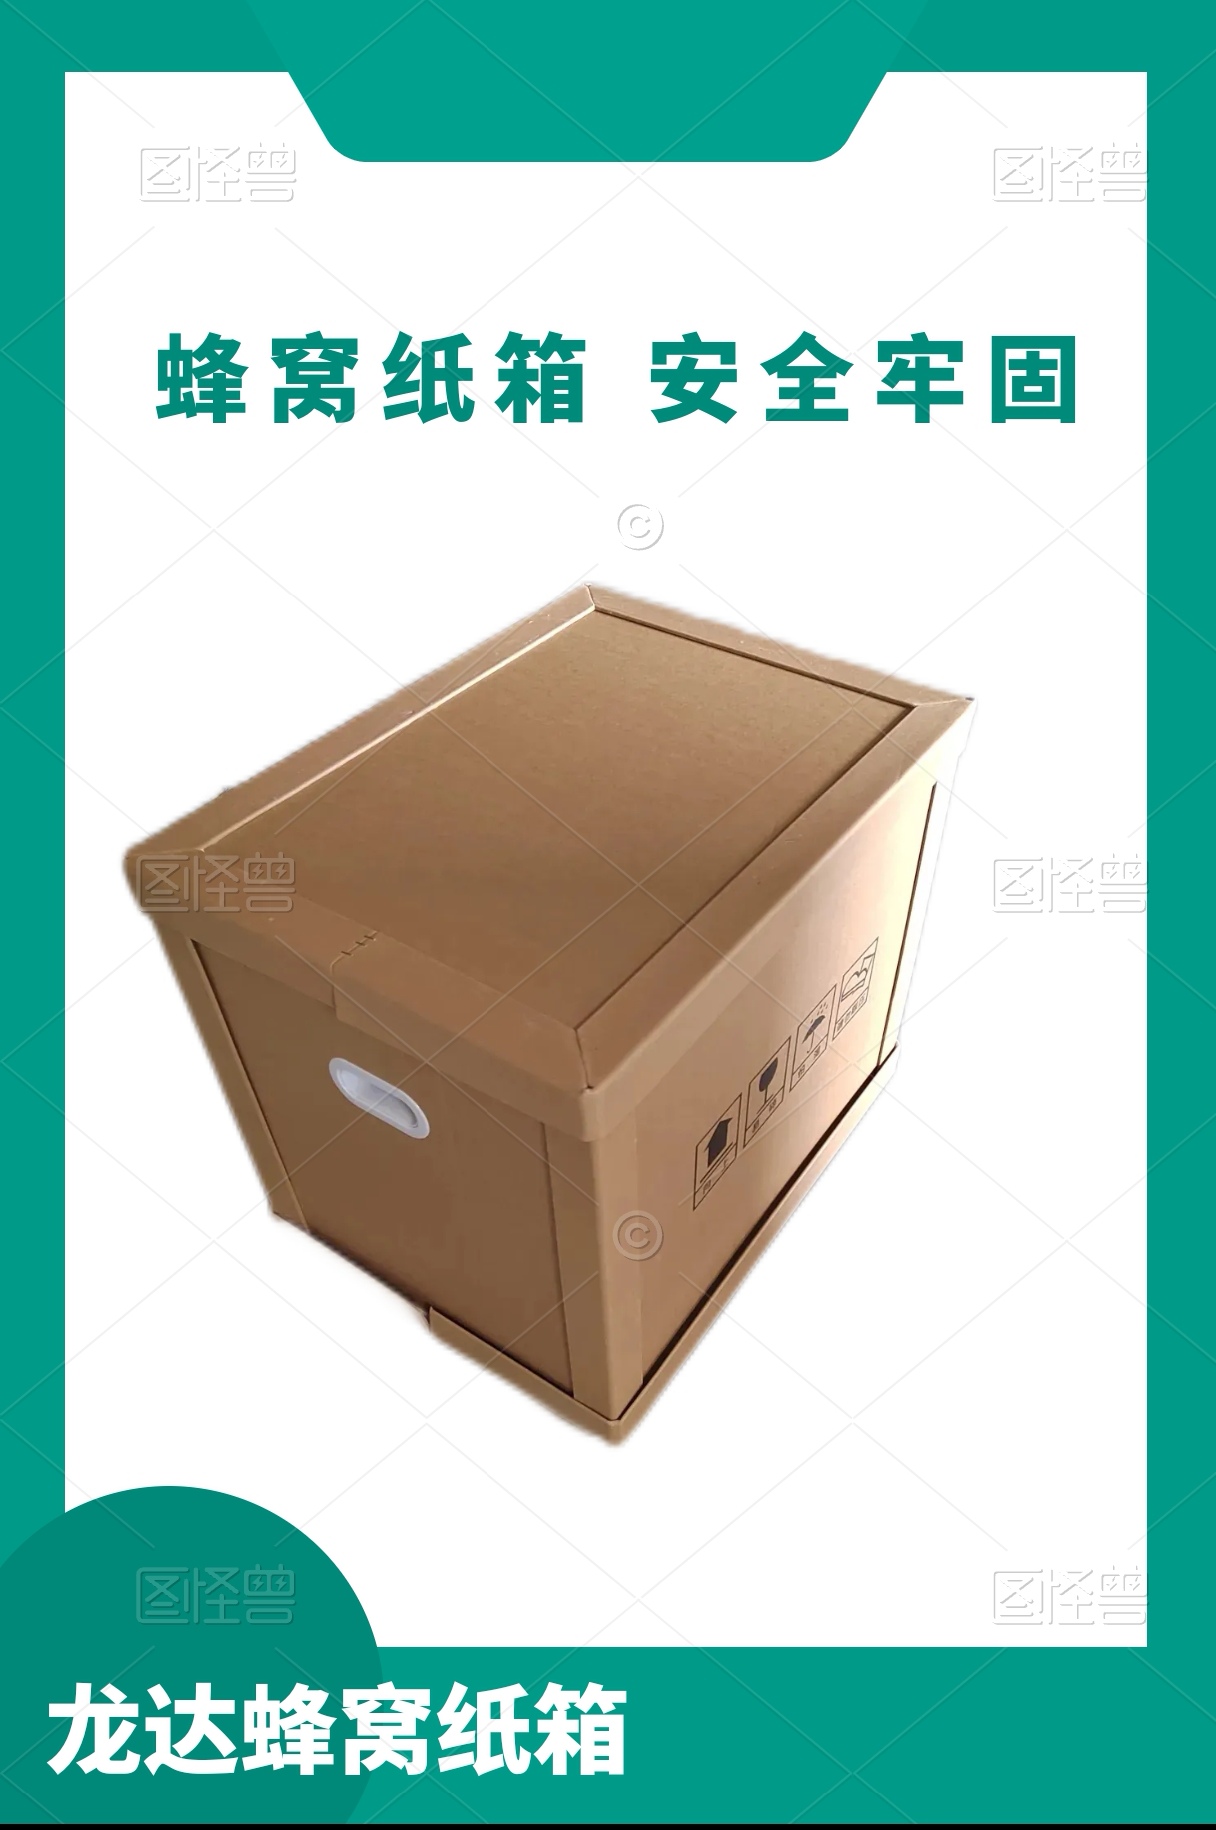 龙达出口包装箱 汽车配件包装箱 展示用品纸箱 定制各种规格